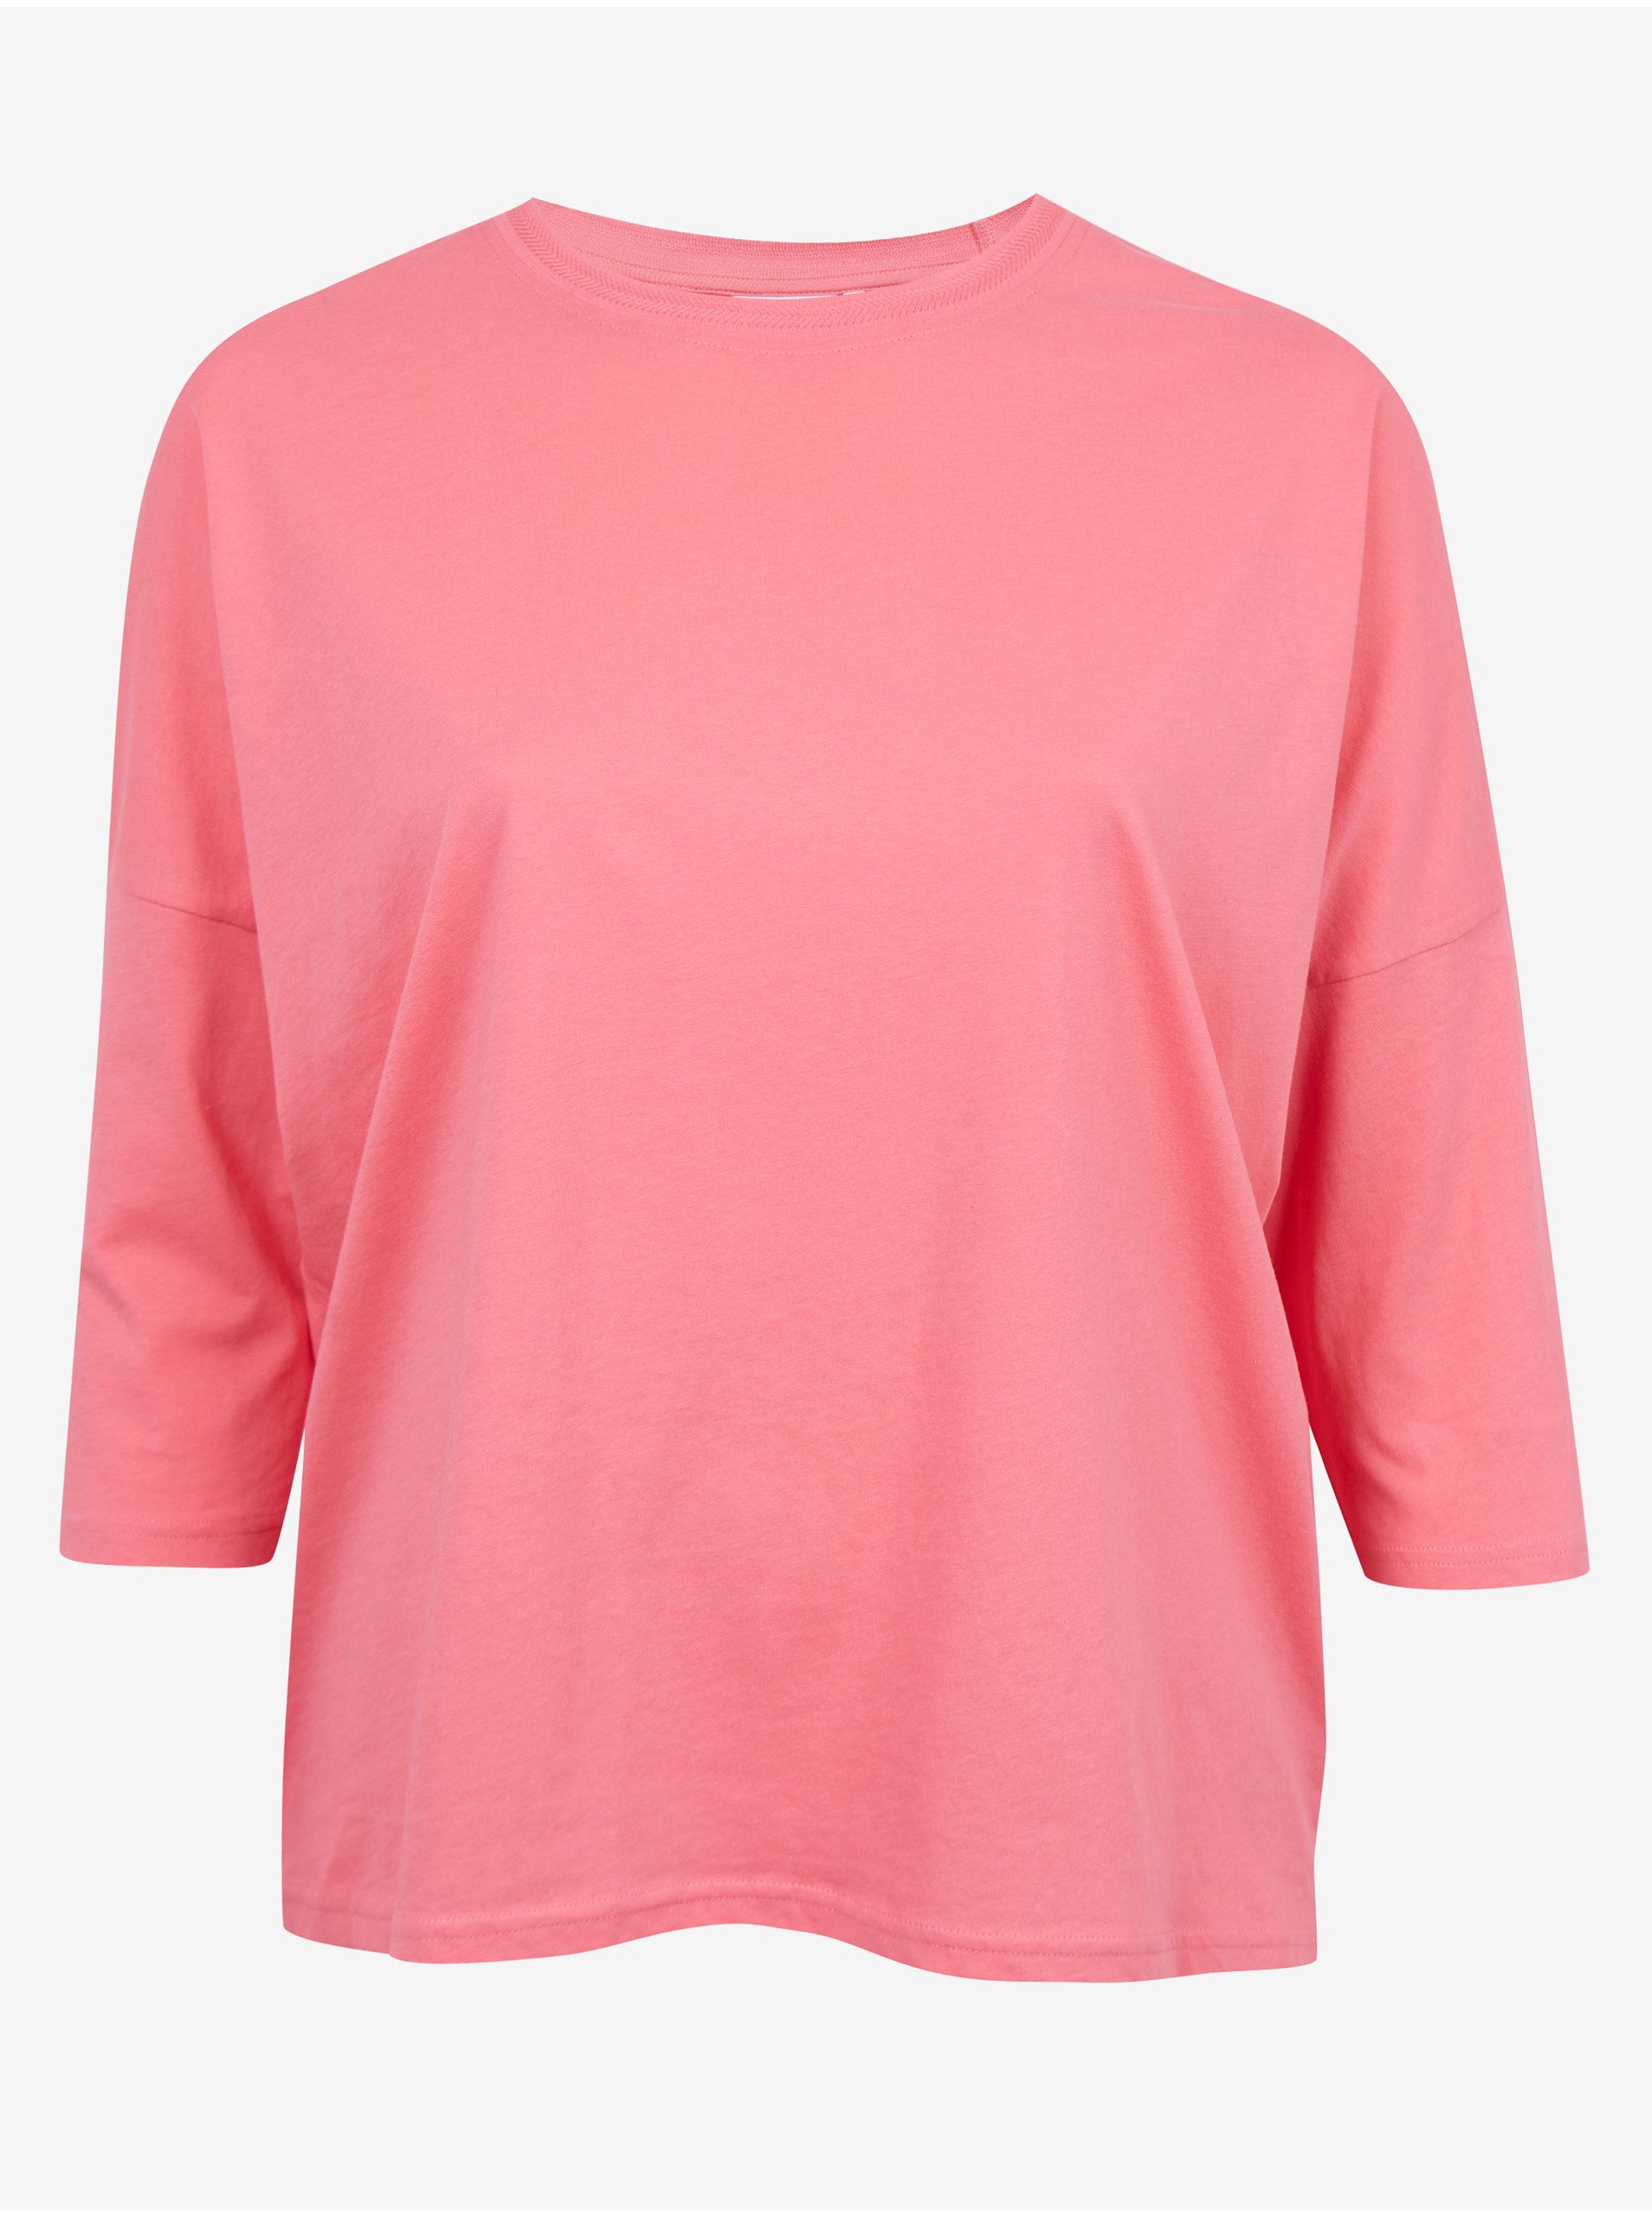 Pink Womens Basic T-Shirt Fransa - Women